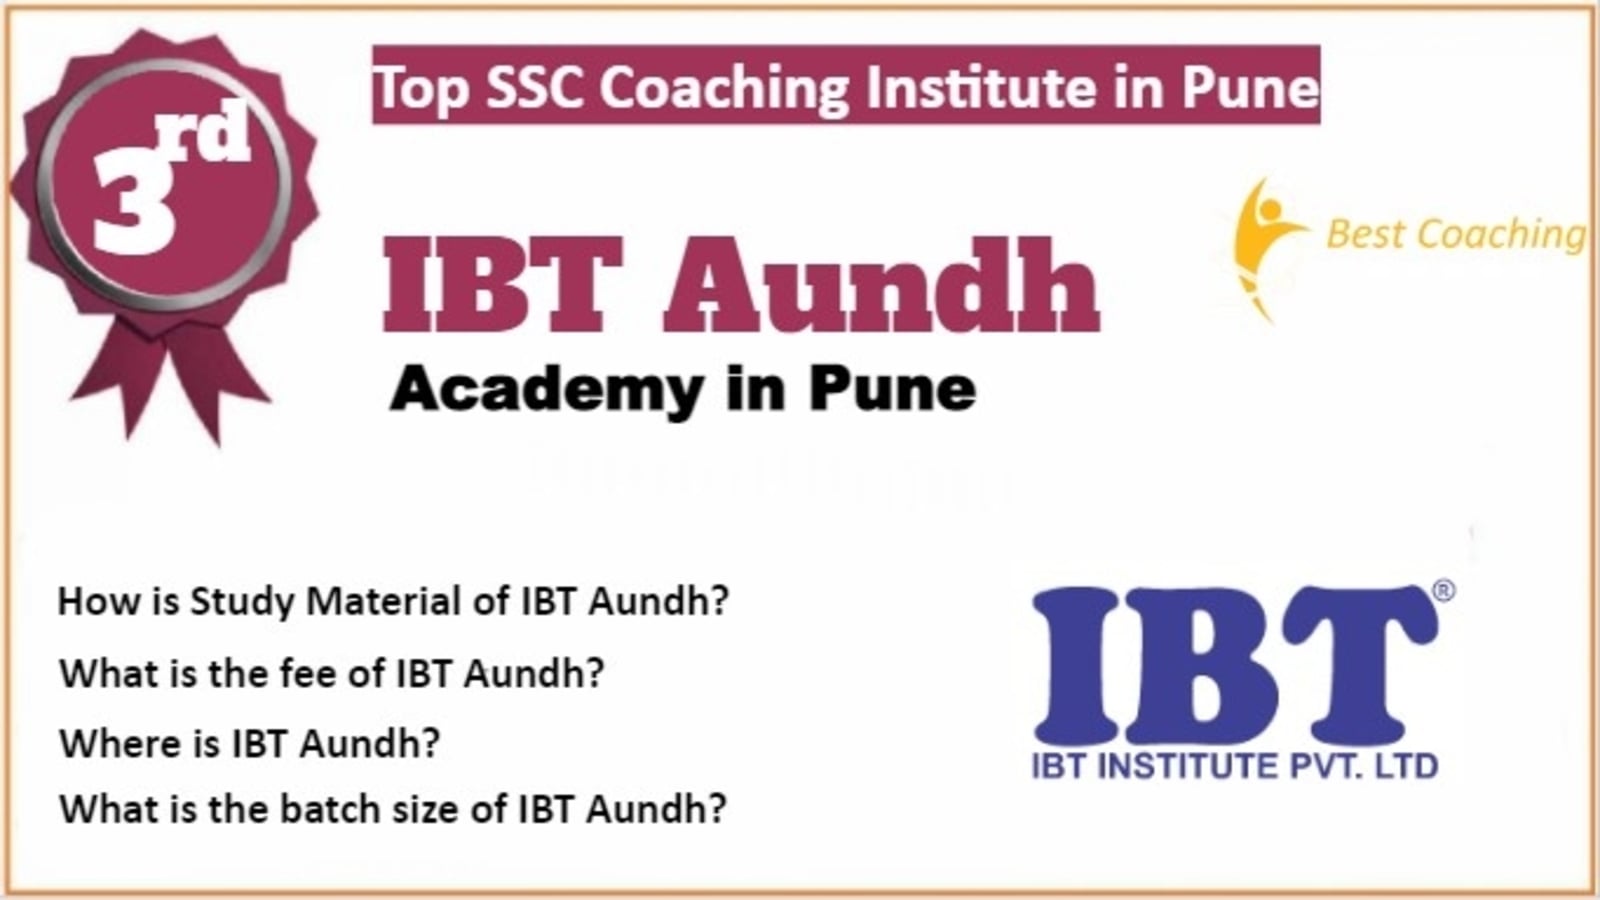 Rank 3 Best SSC Coaching in Pune